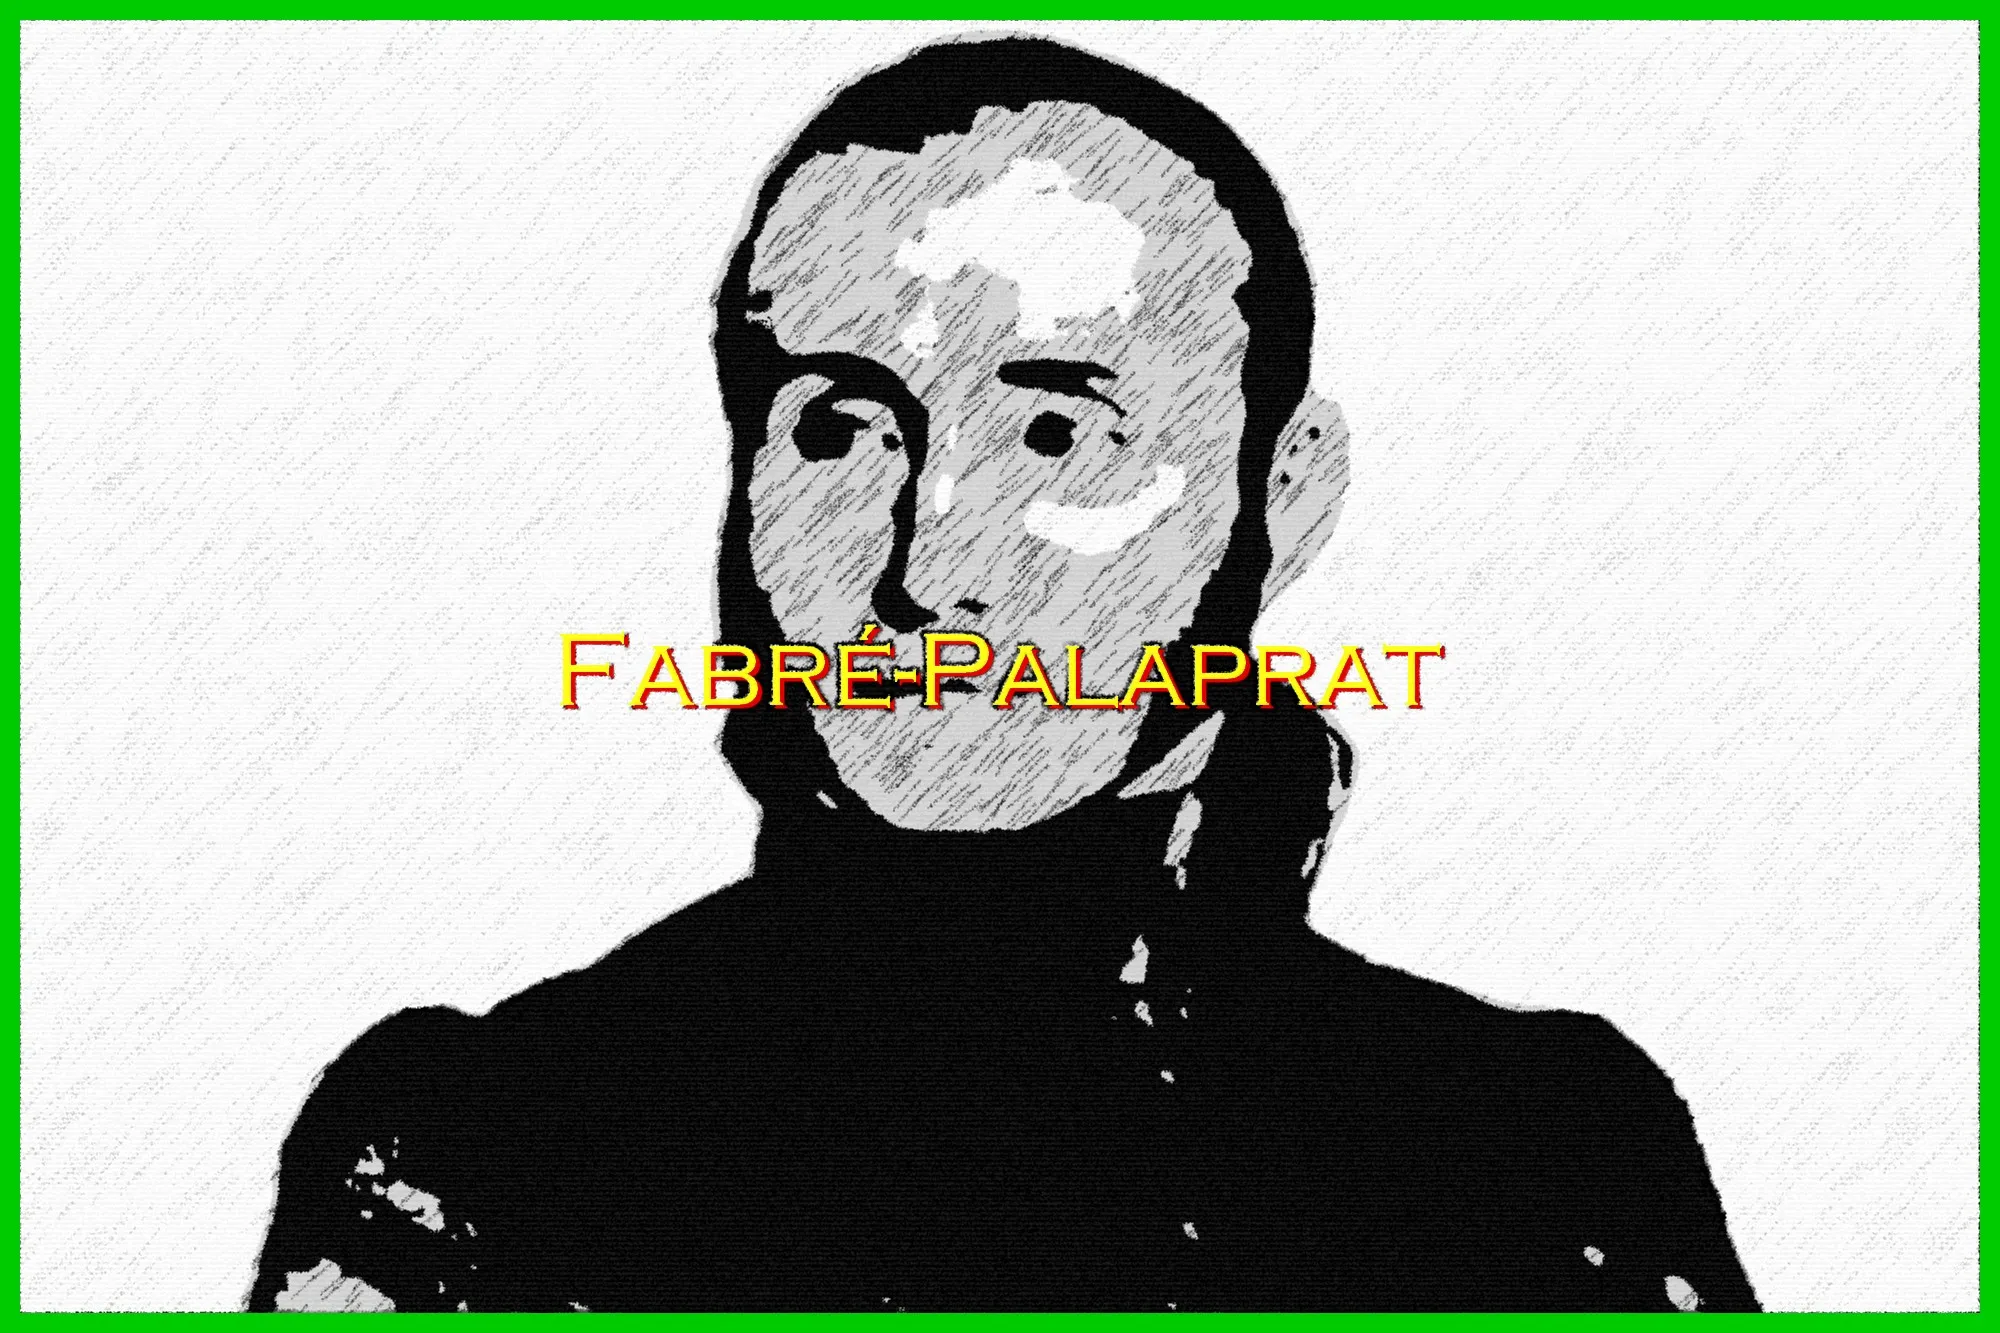 Bernard Raymond Fabré-Palaprat